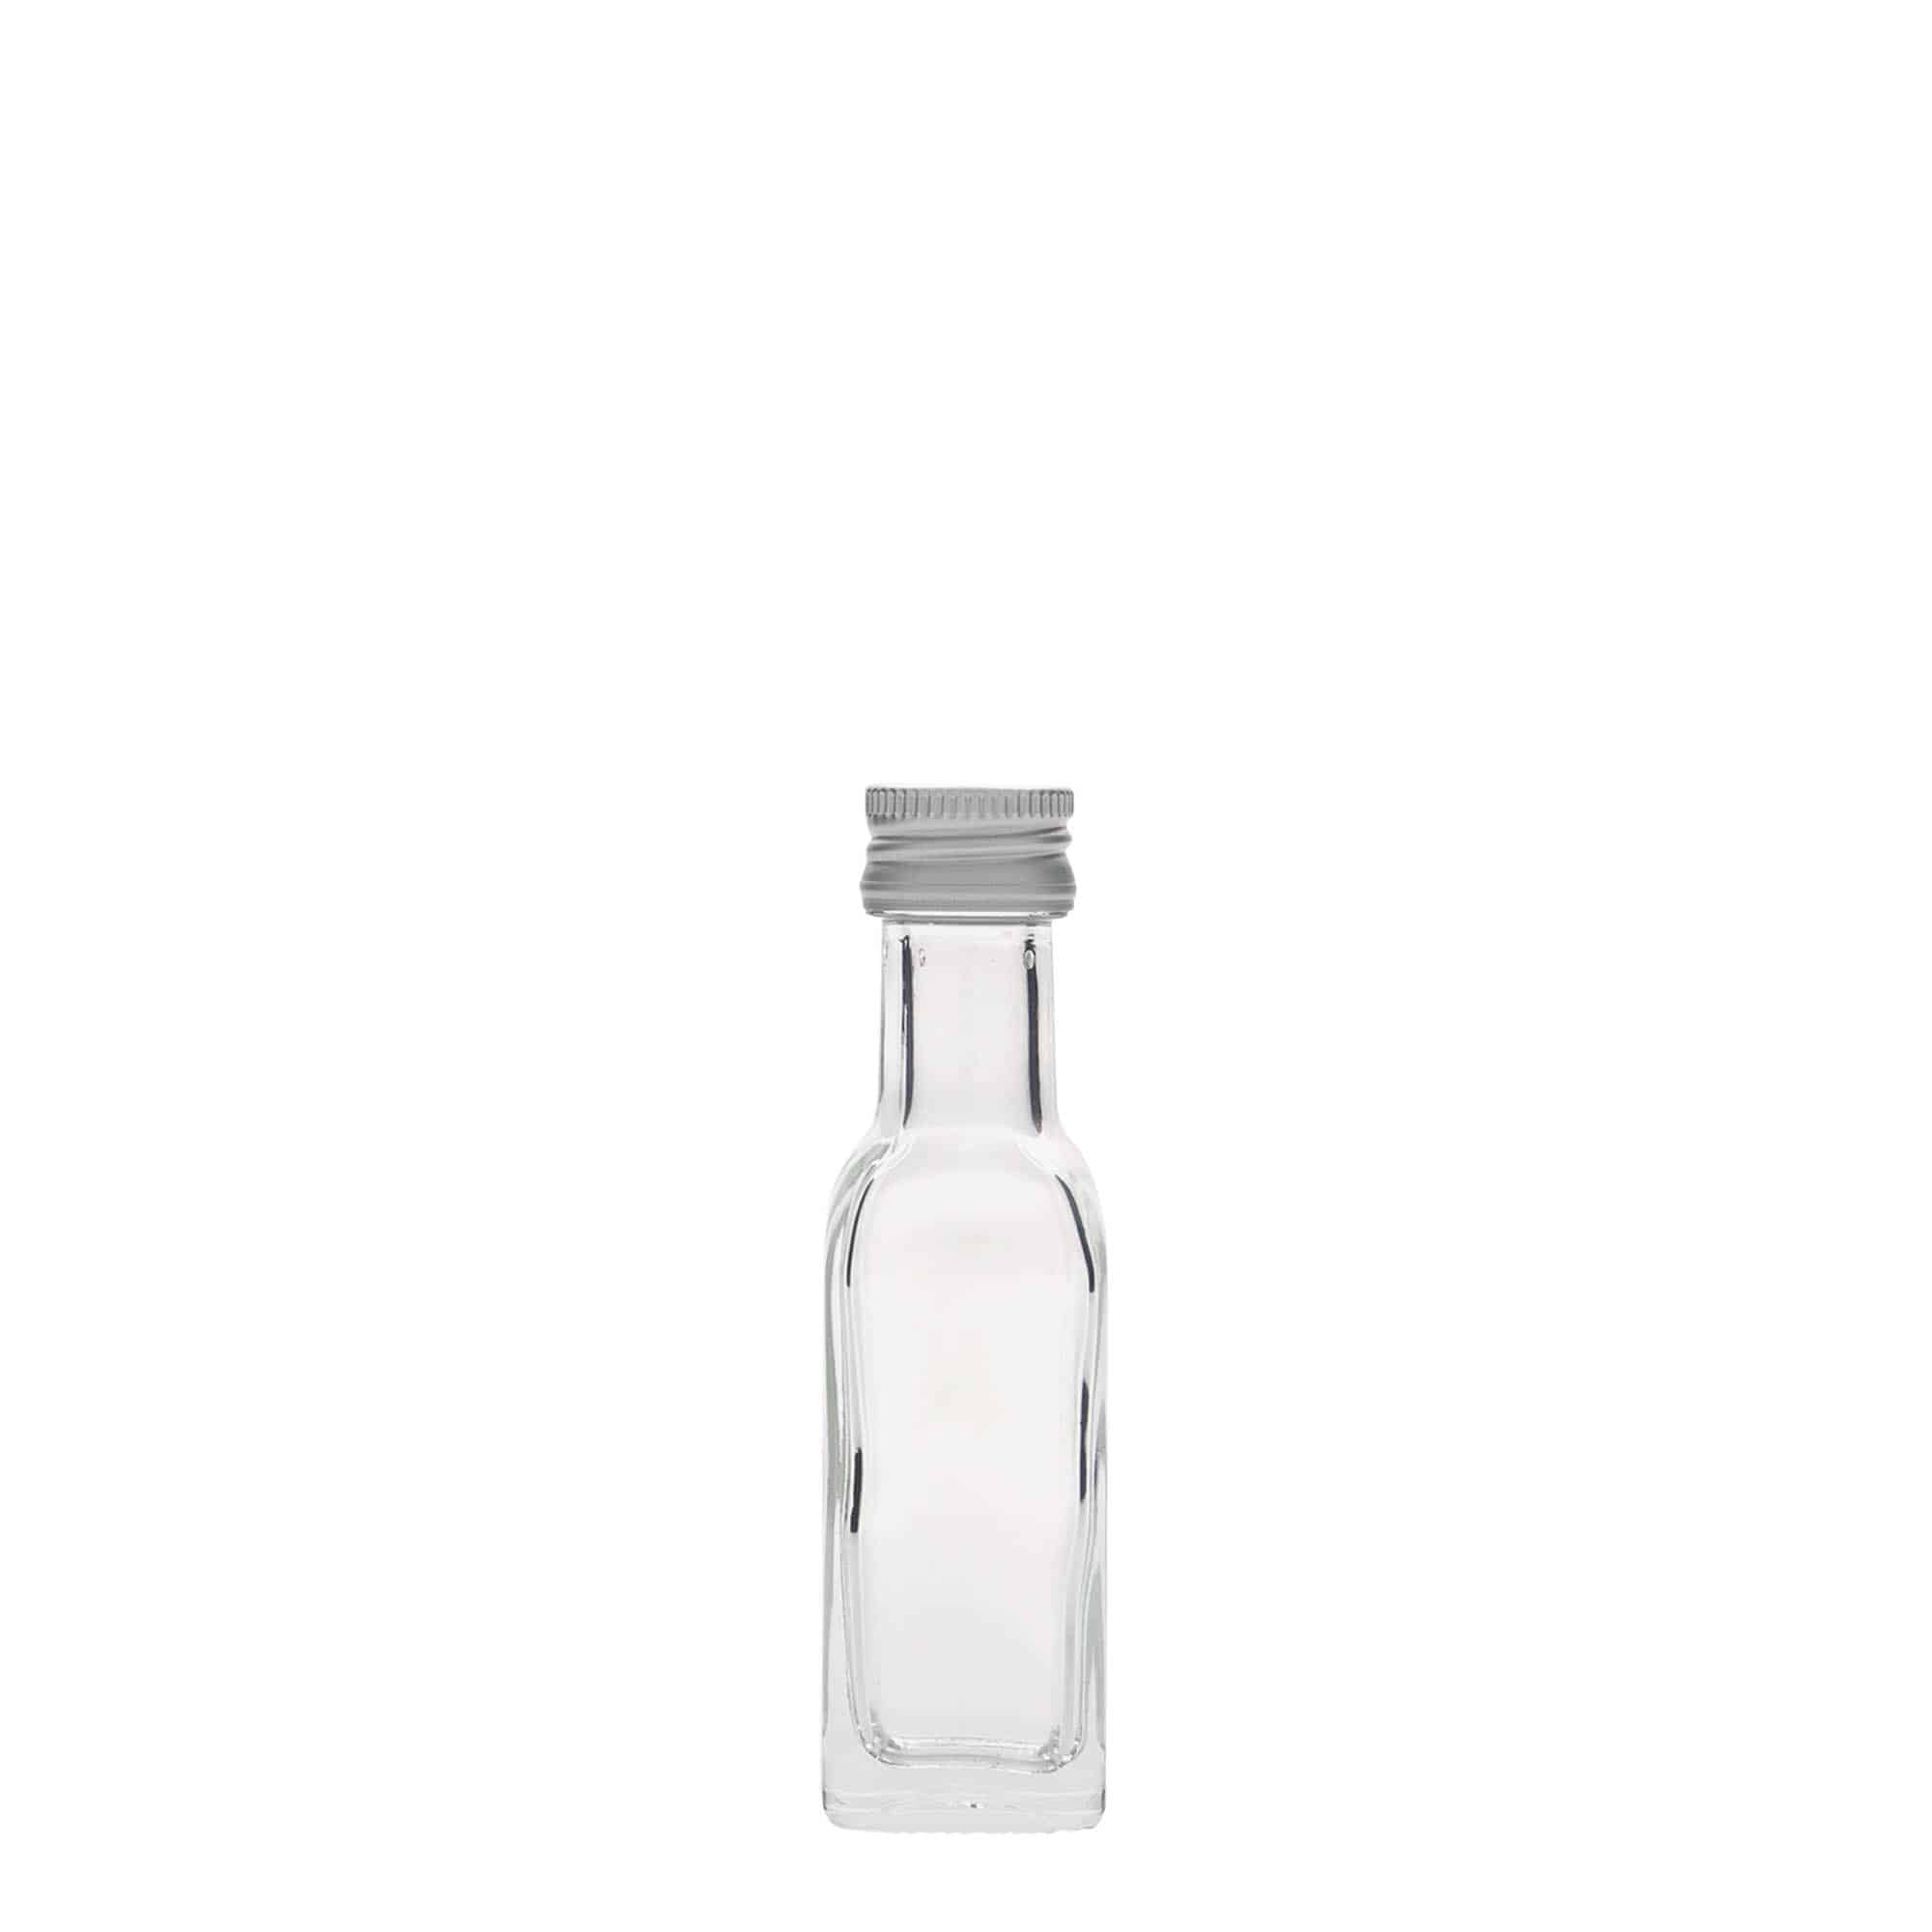 20 ml glasflaske 'Marasca', kvadratisk, åbning: PP 18